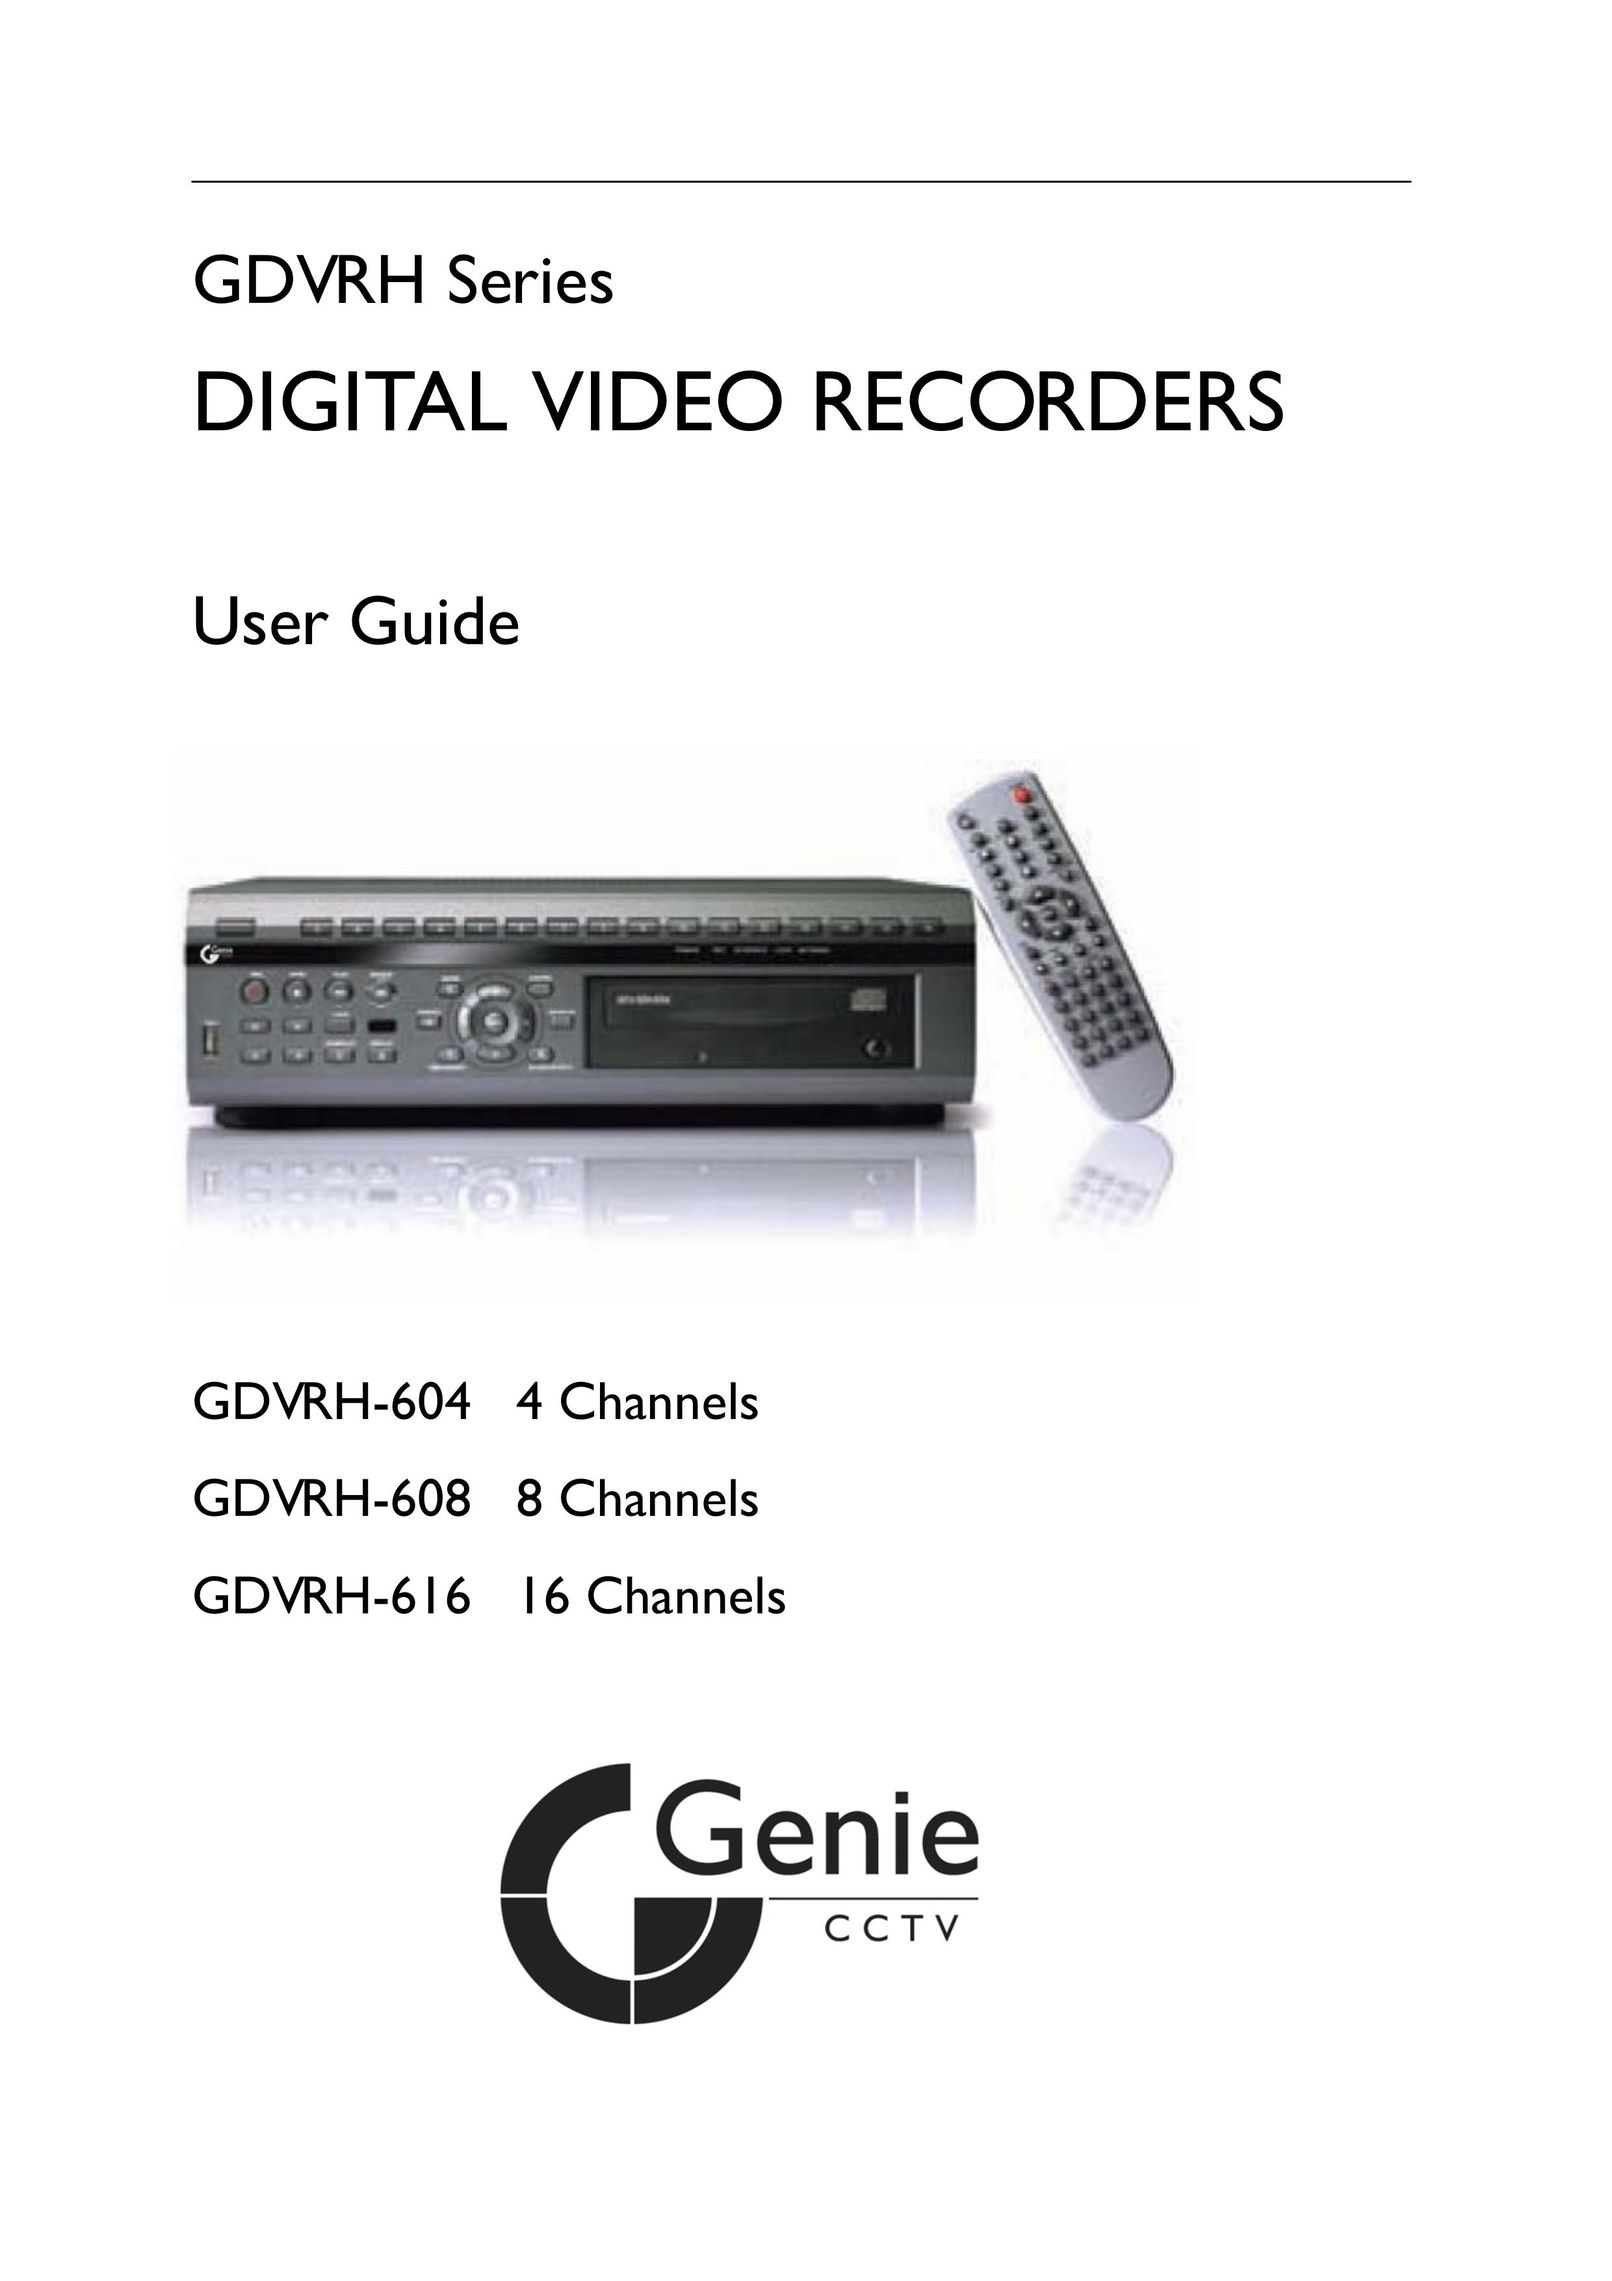 Genie GDVRH-616 DVR User Manual